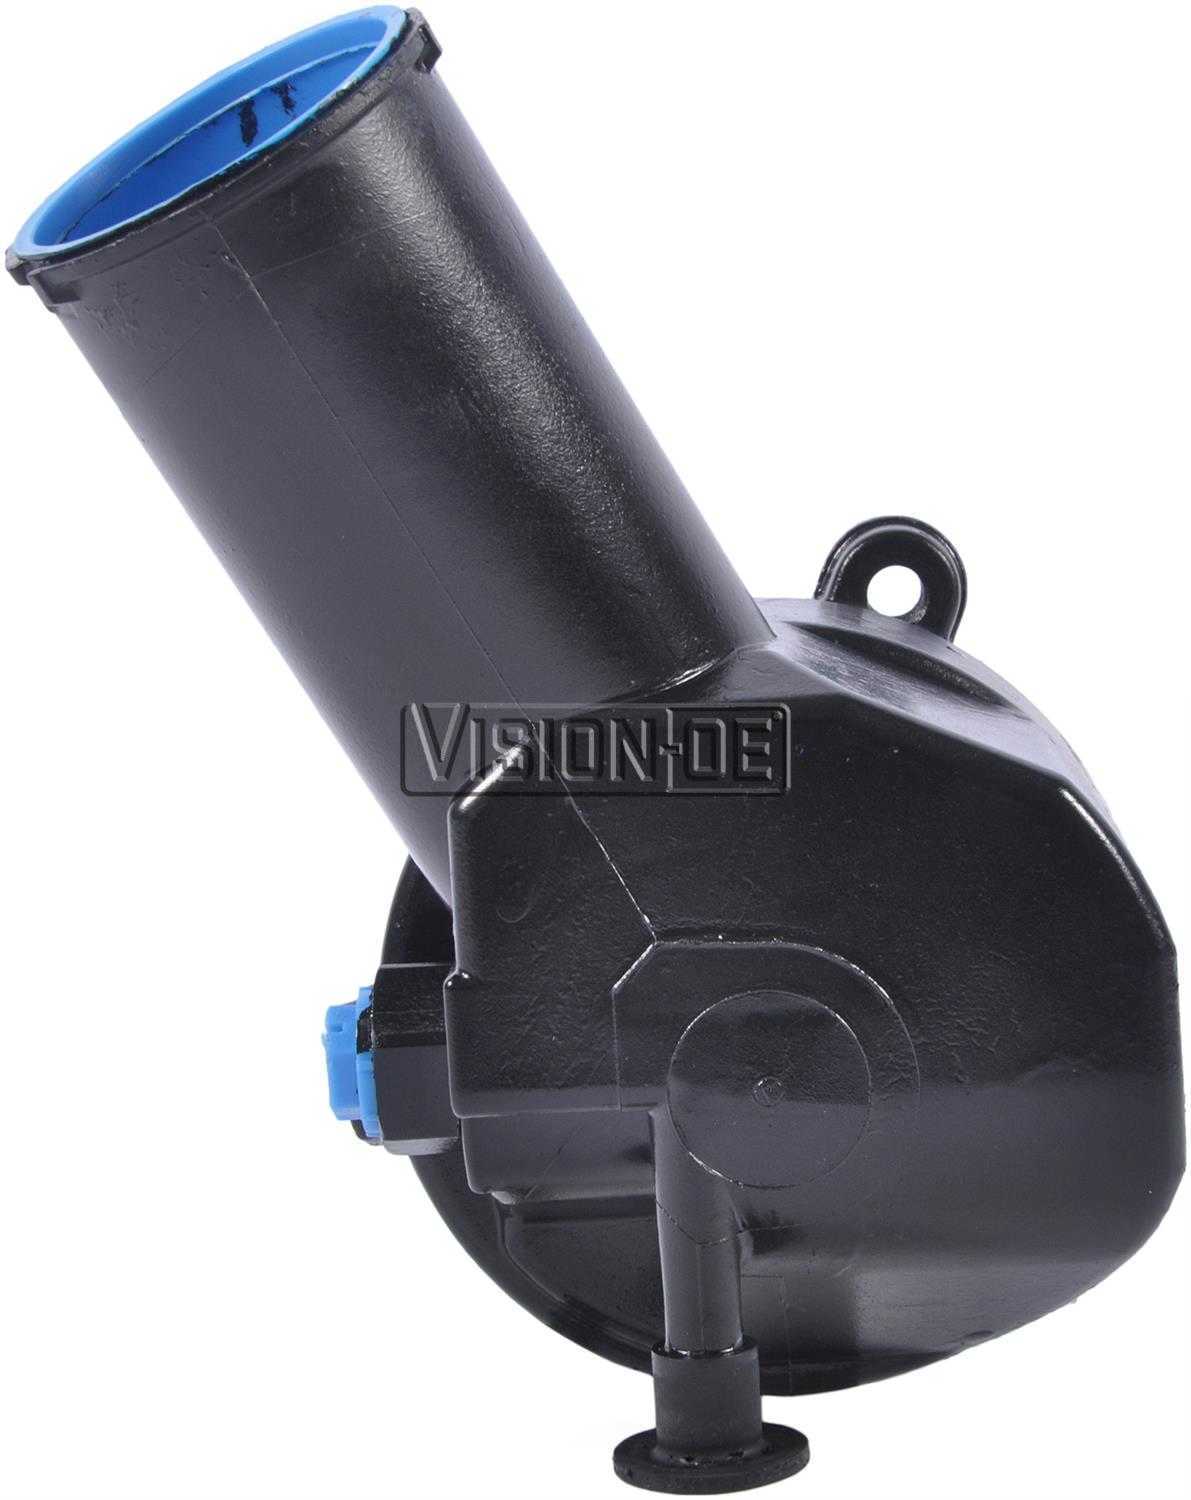 VISION-OE - Reman Power Steering Pump - VOE 711-2134